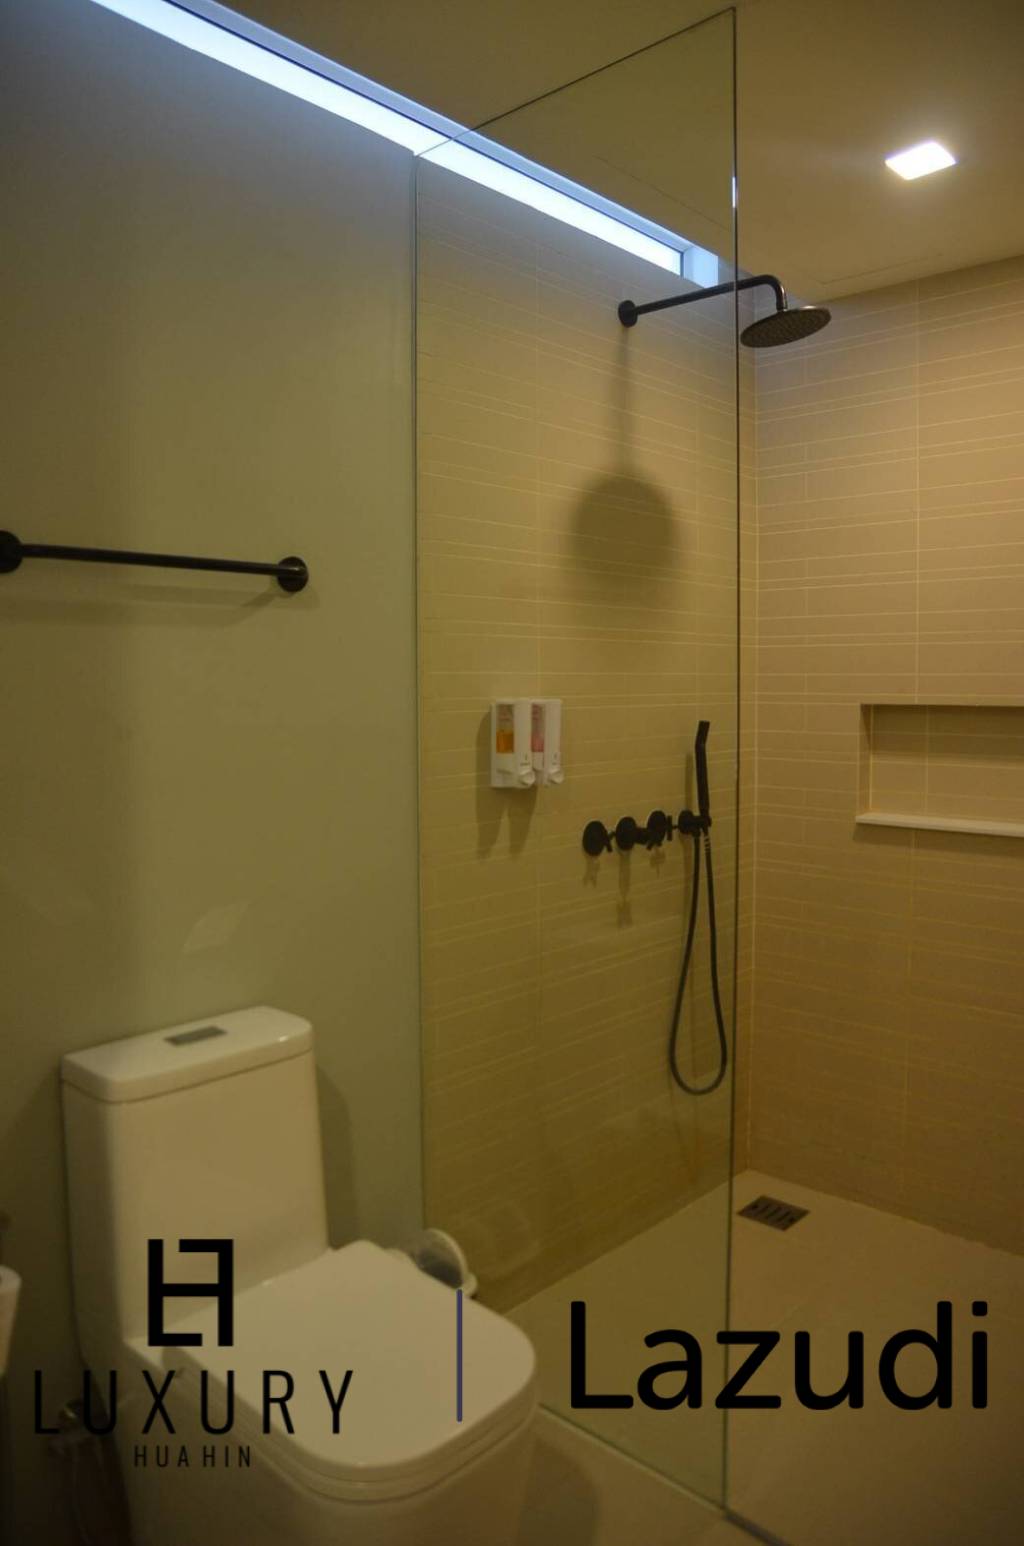 53 平方米 1 床 1 洗澡 公寓 对于 租